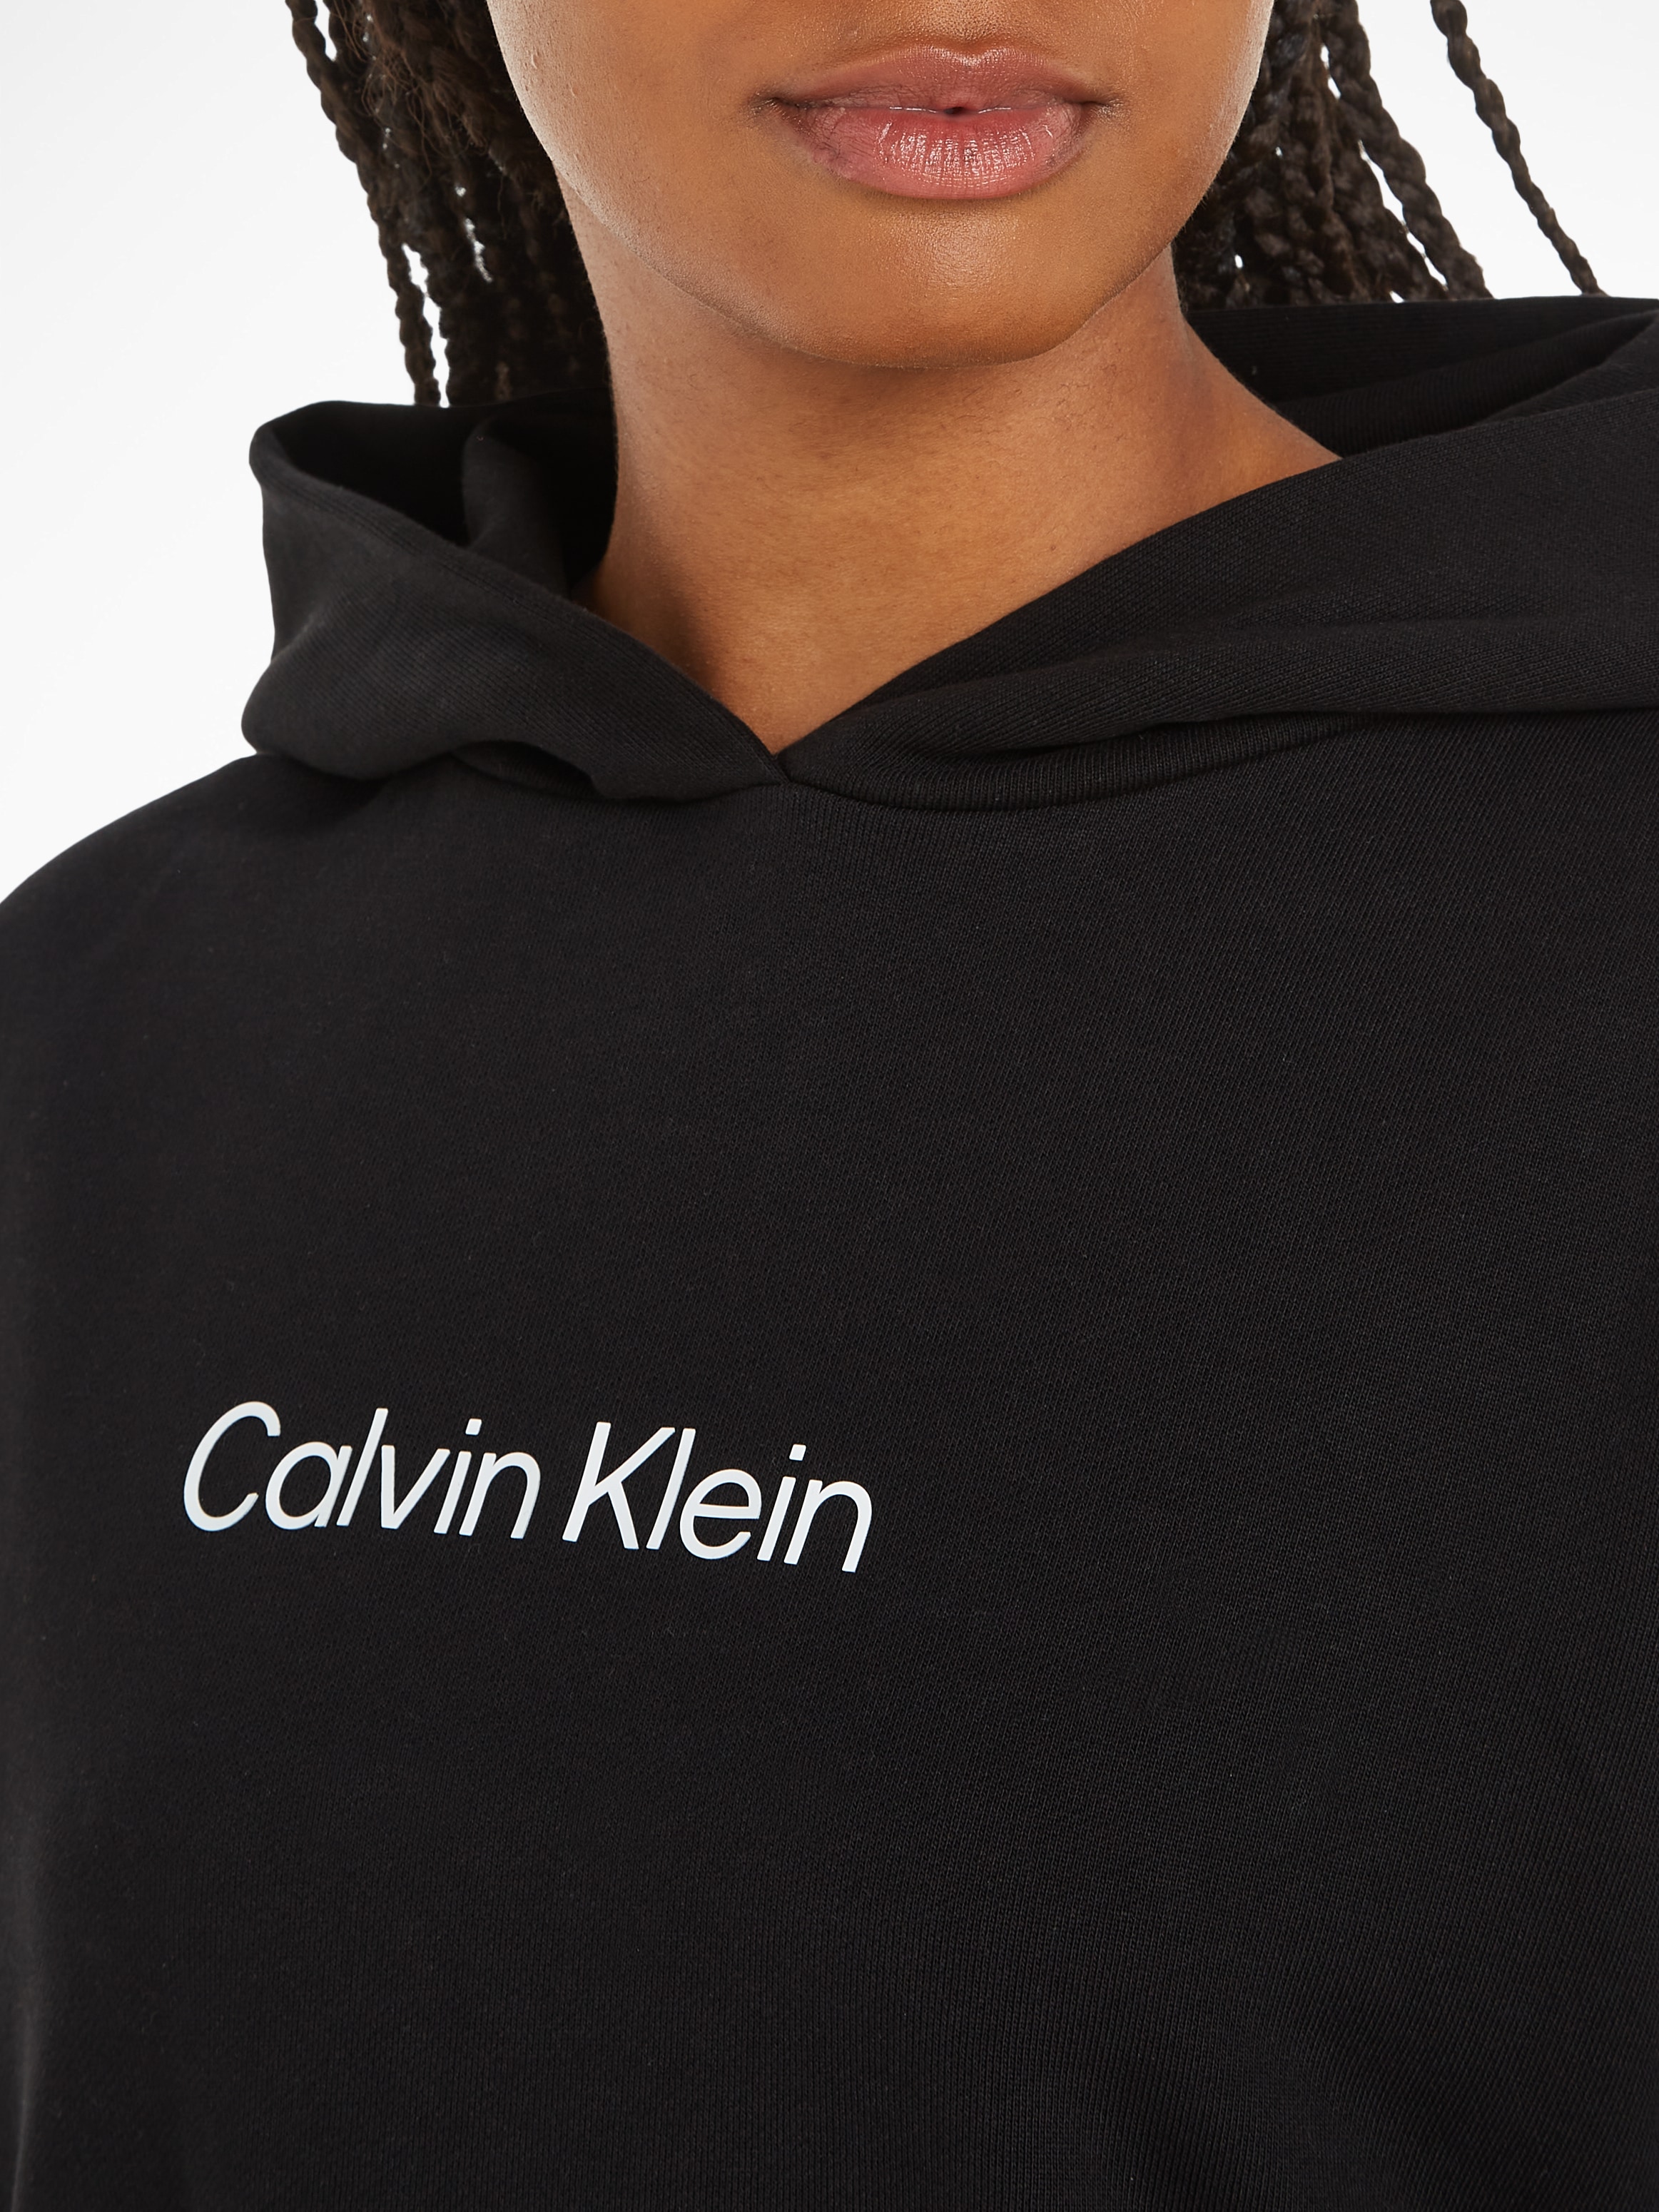 Calvin Klein Sweatkleid »HERO LOGO HOODIE DRESS« online kaufen | I'm walking